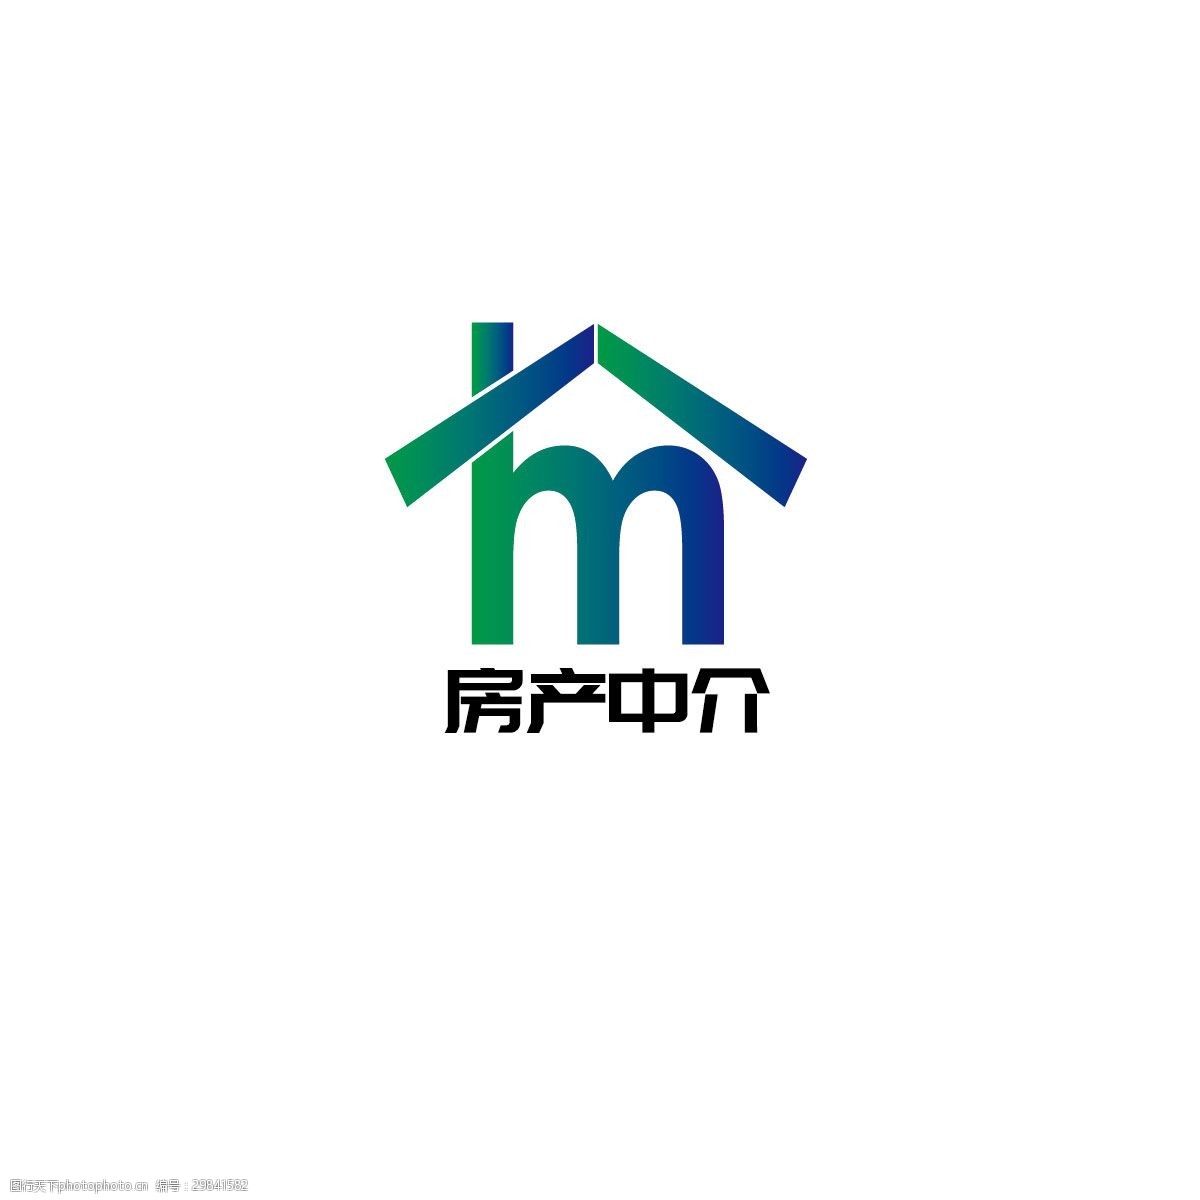 关键词:房产中介logo设计 房子 房产 地产 中介 简约 字母m 置业